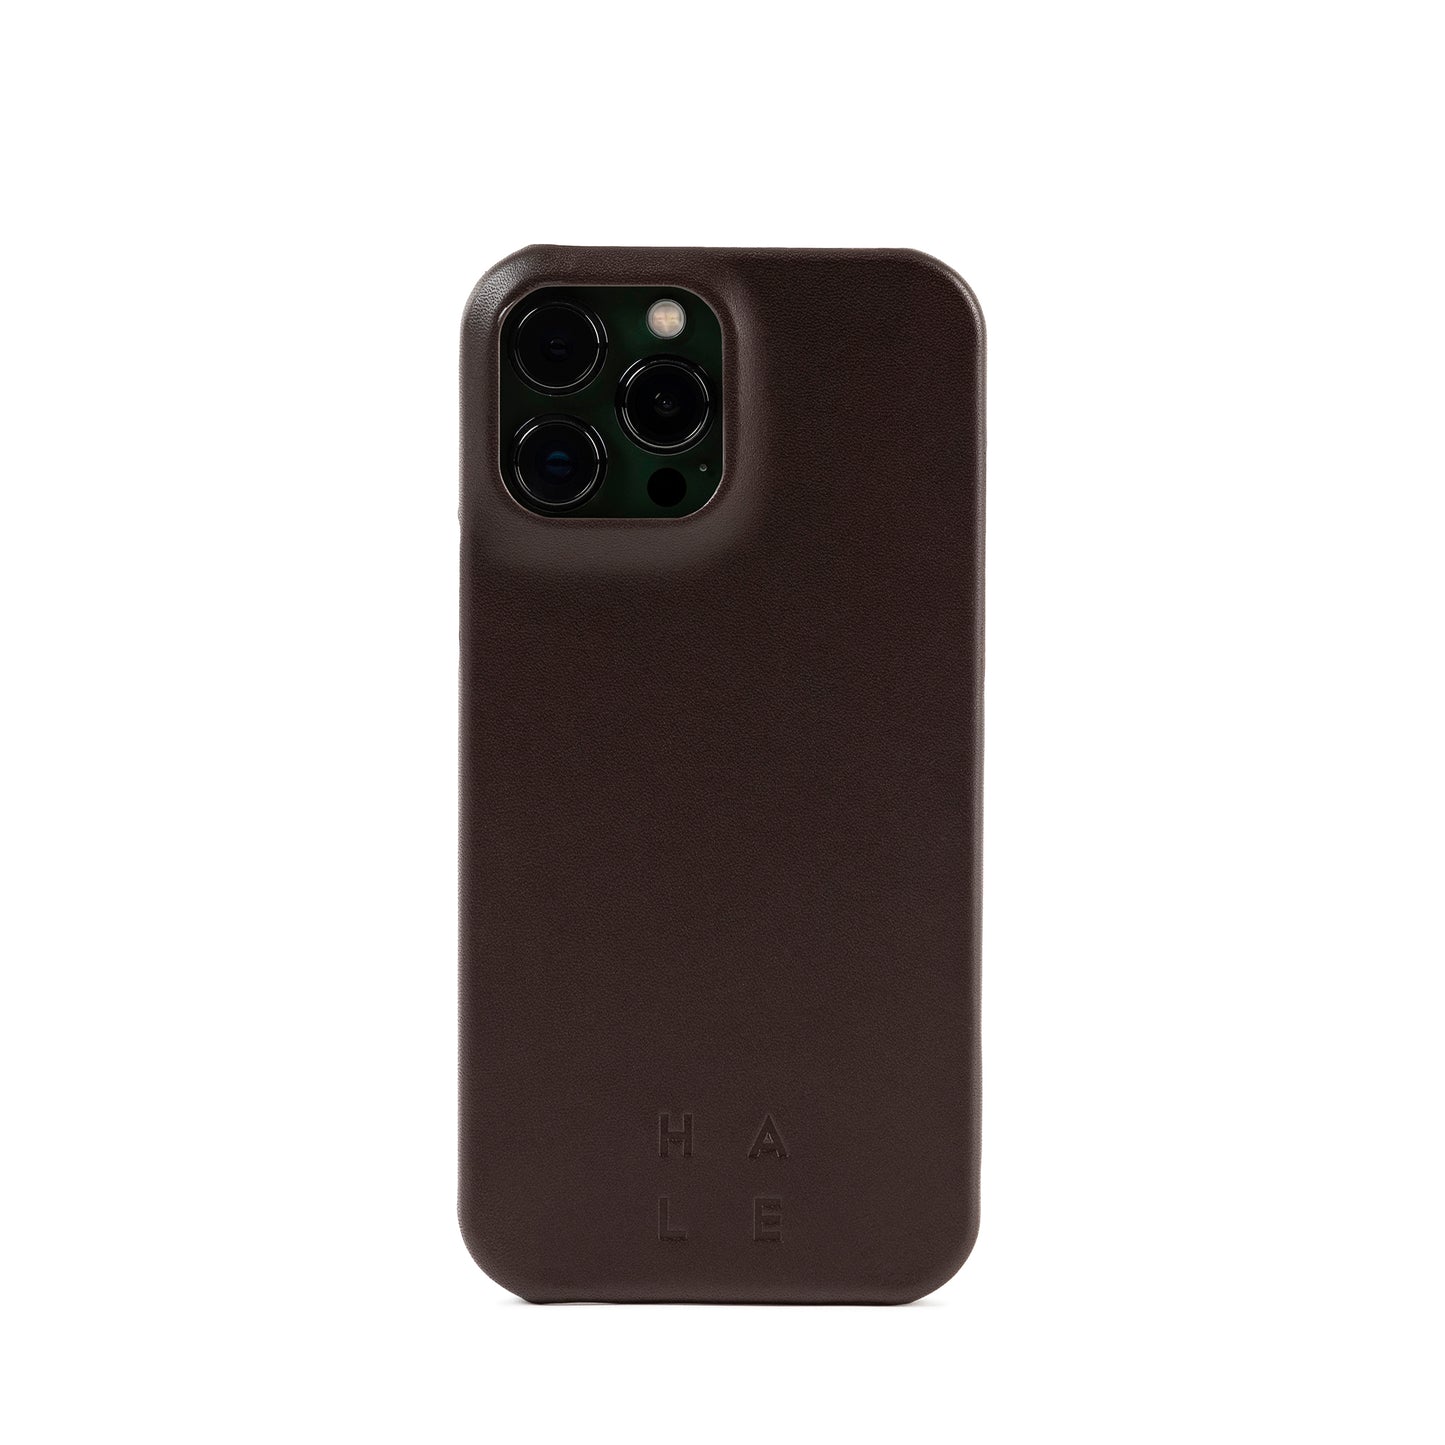 YLLEVAD IPhone Case 14 Pro Max Darkbrown